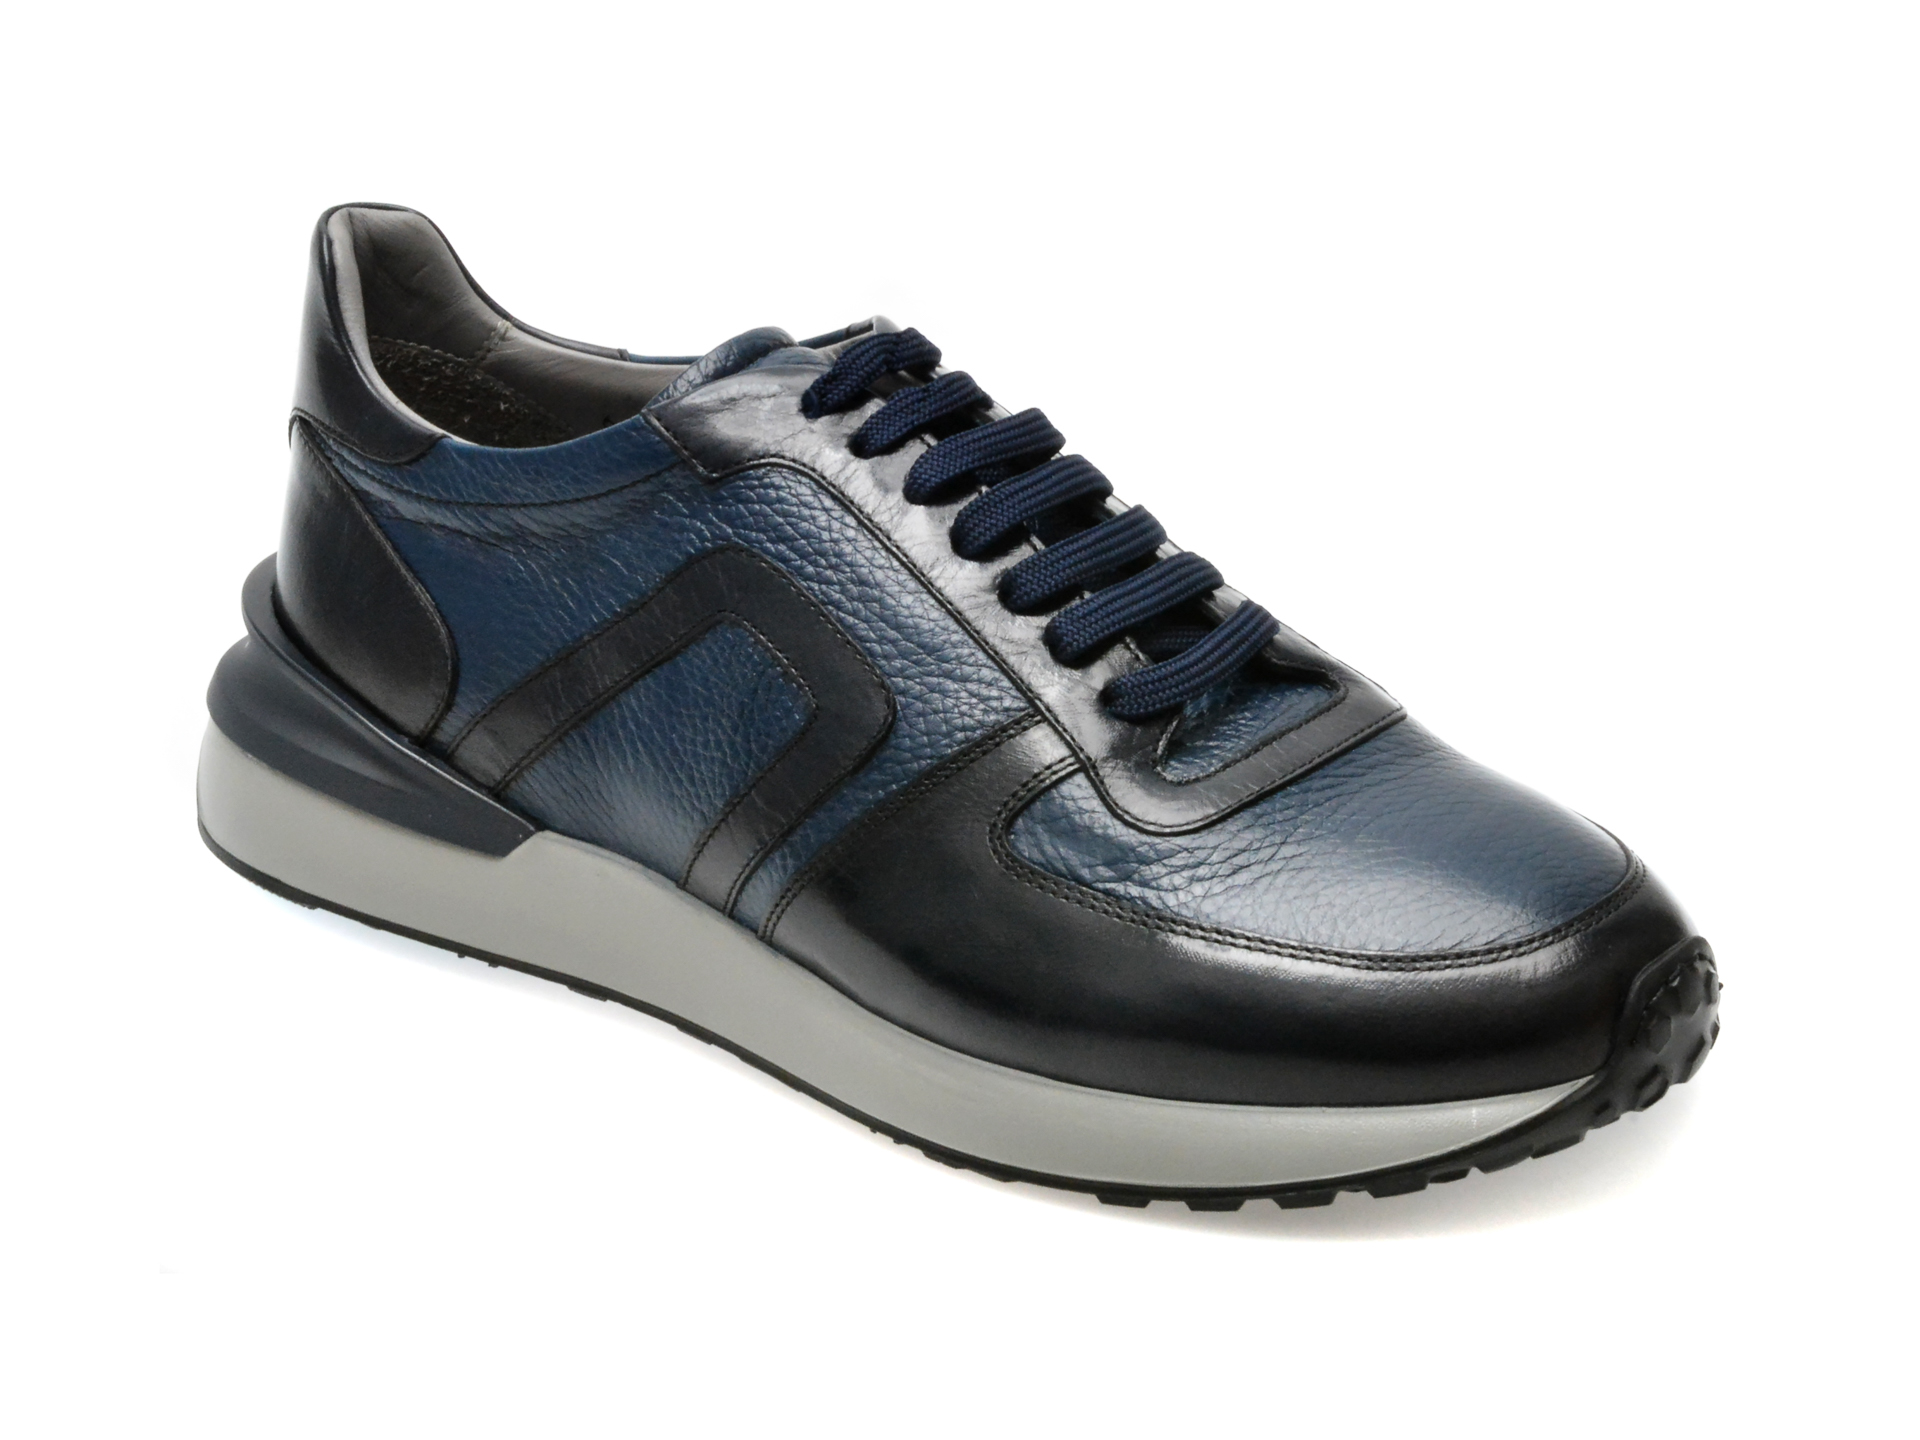 Pantofi LE COLONEL, albastri, 664011, piele naturala